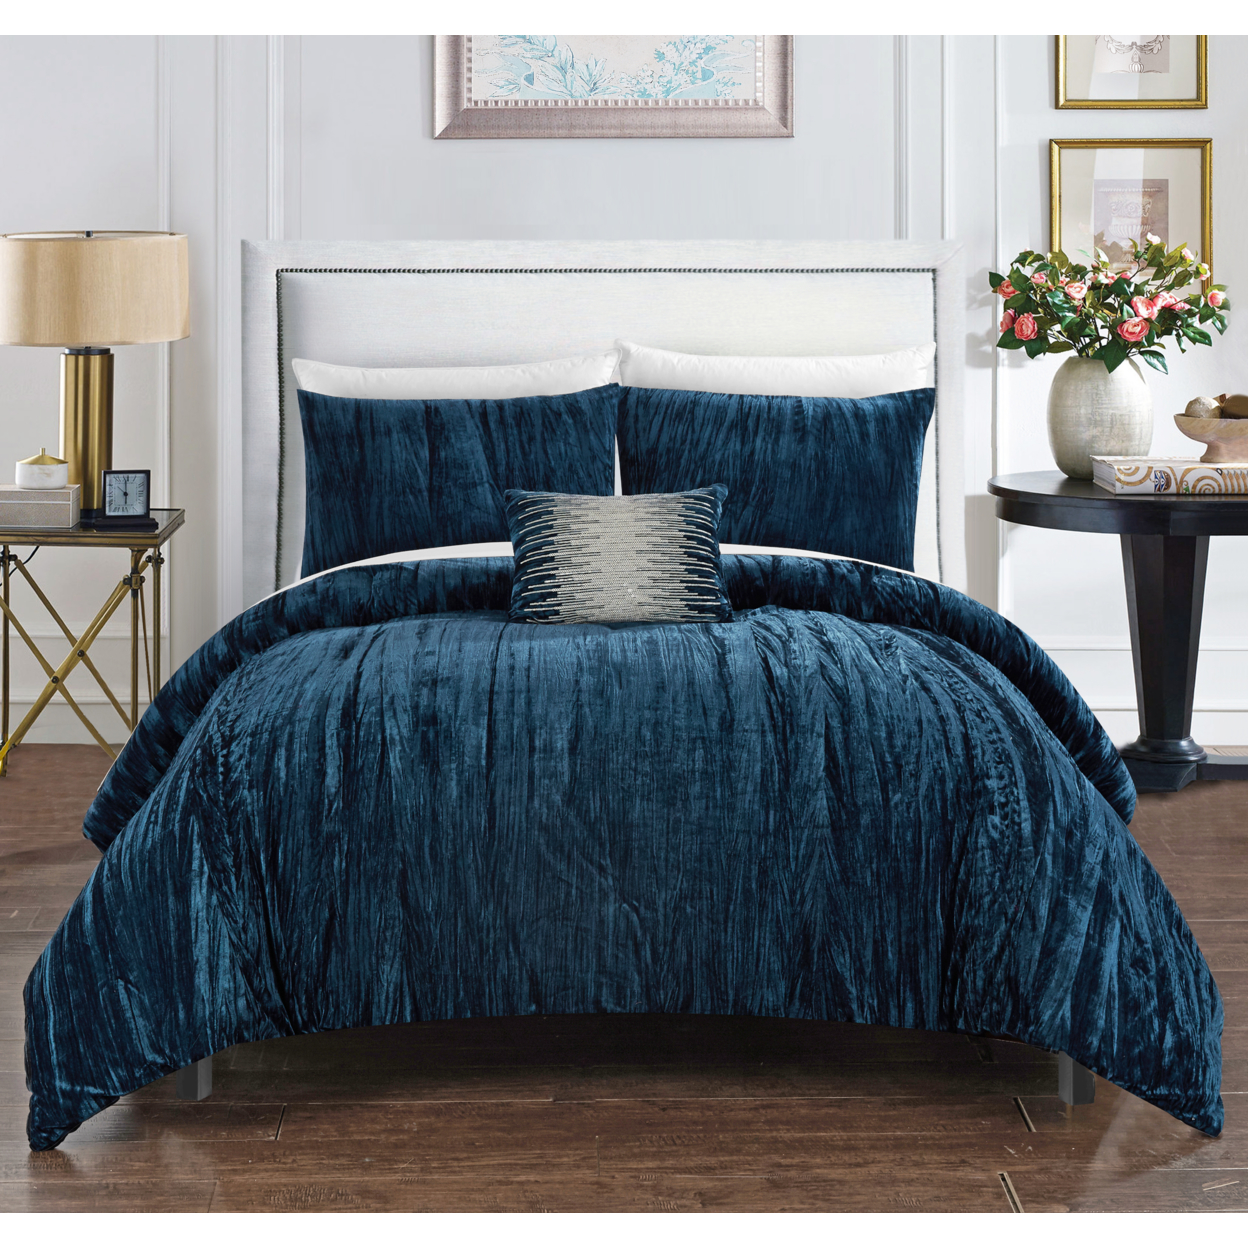 Merieta 4 Piece Comforter Set Crinkle Crushed Velvet Bedding - Decorative Pillow Shams Included - Navy, Queen